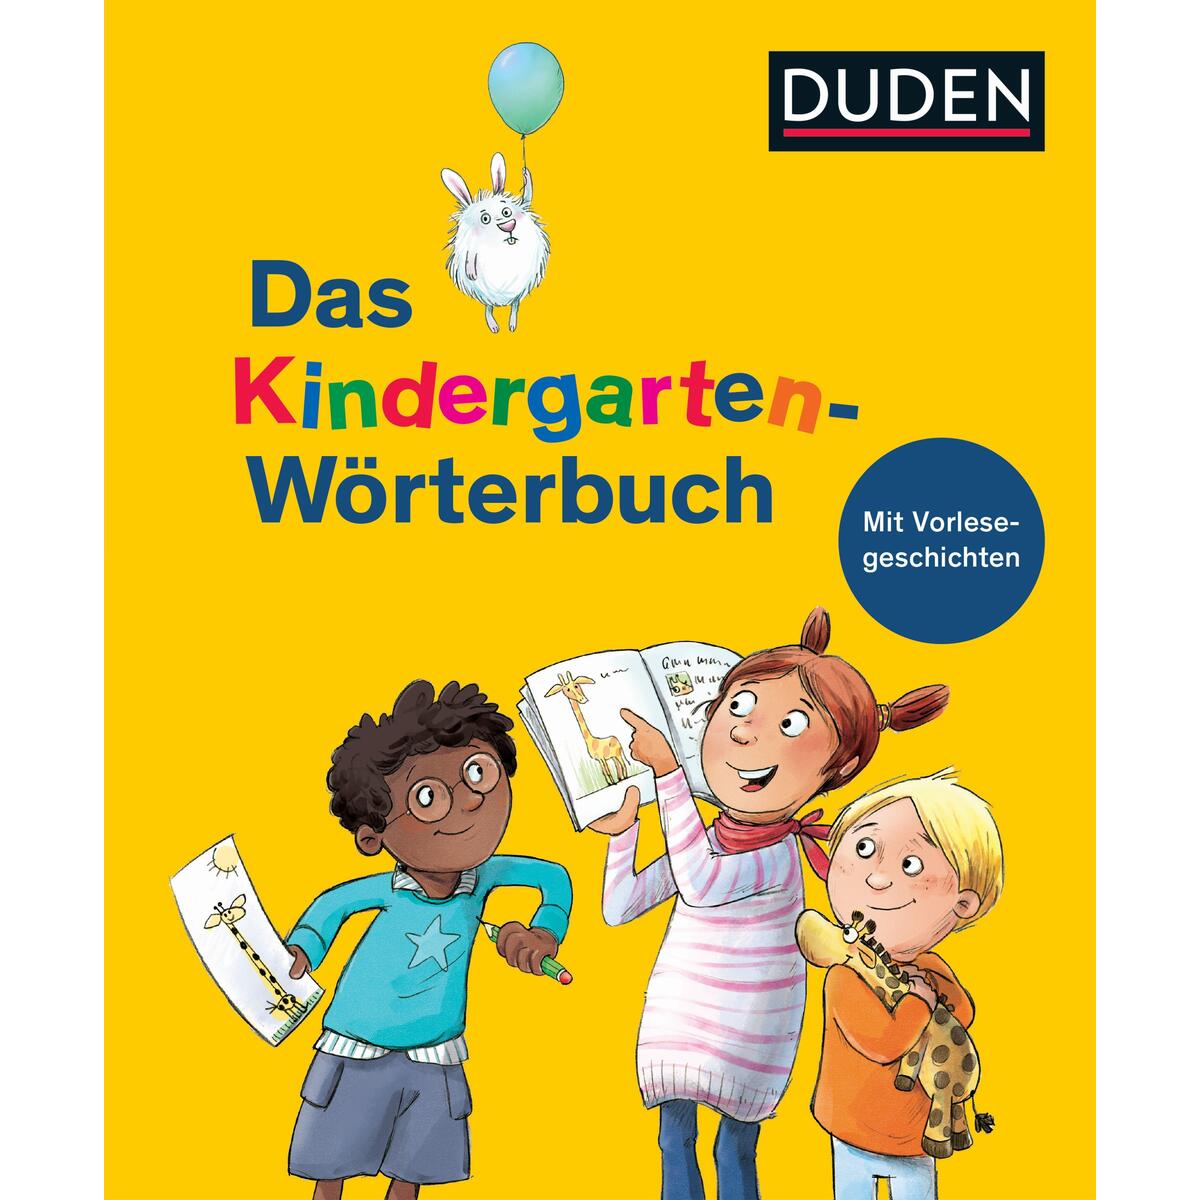 Duden - Das Kindergarten-Wörterbuch von Bibliograph. Instit. GmbH